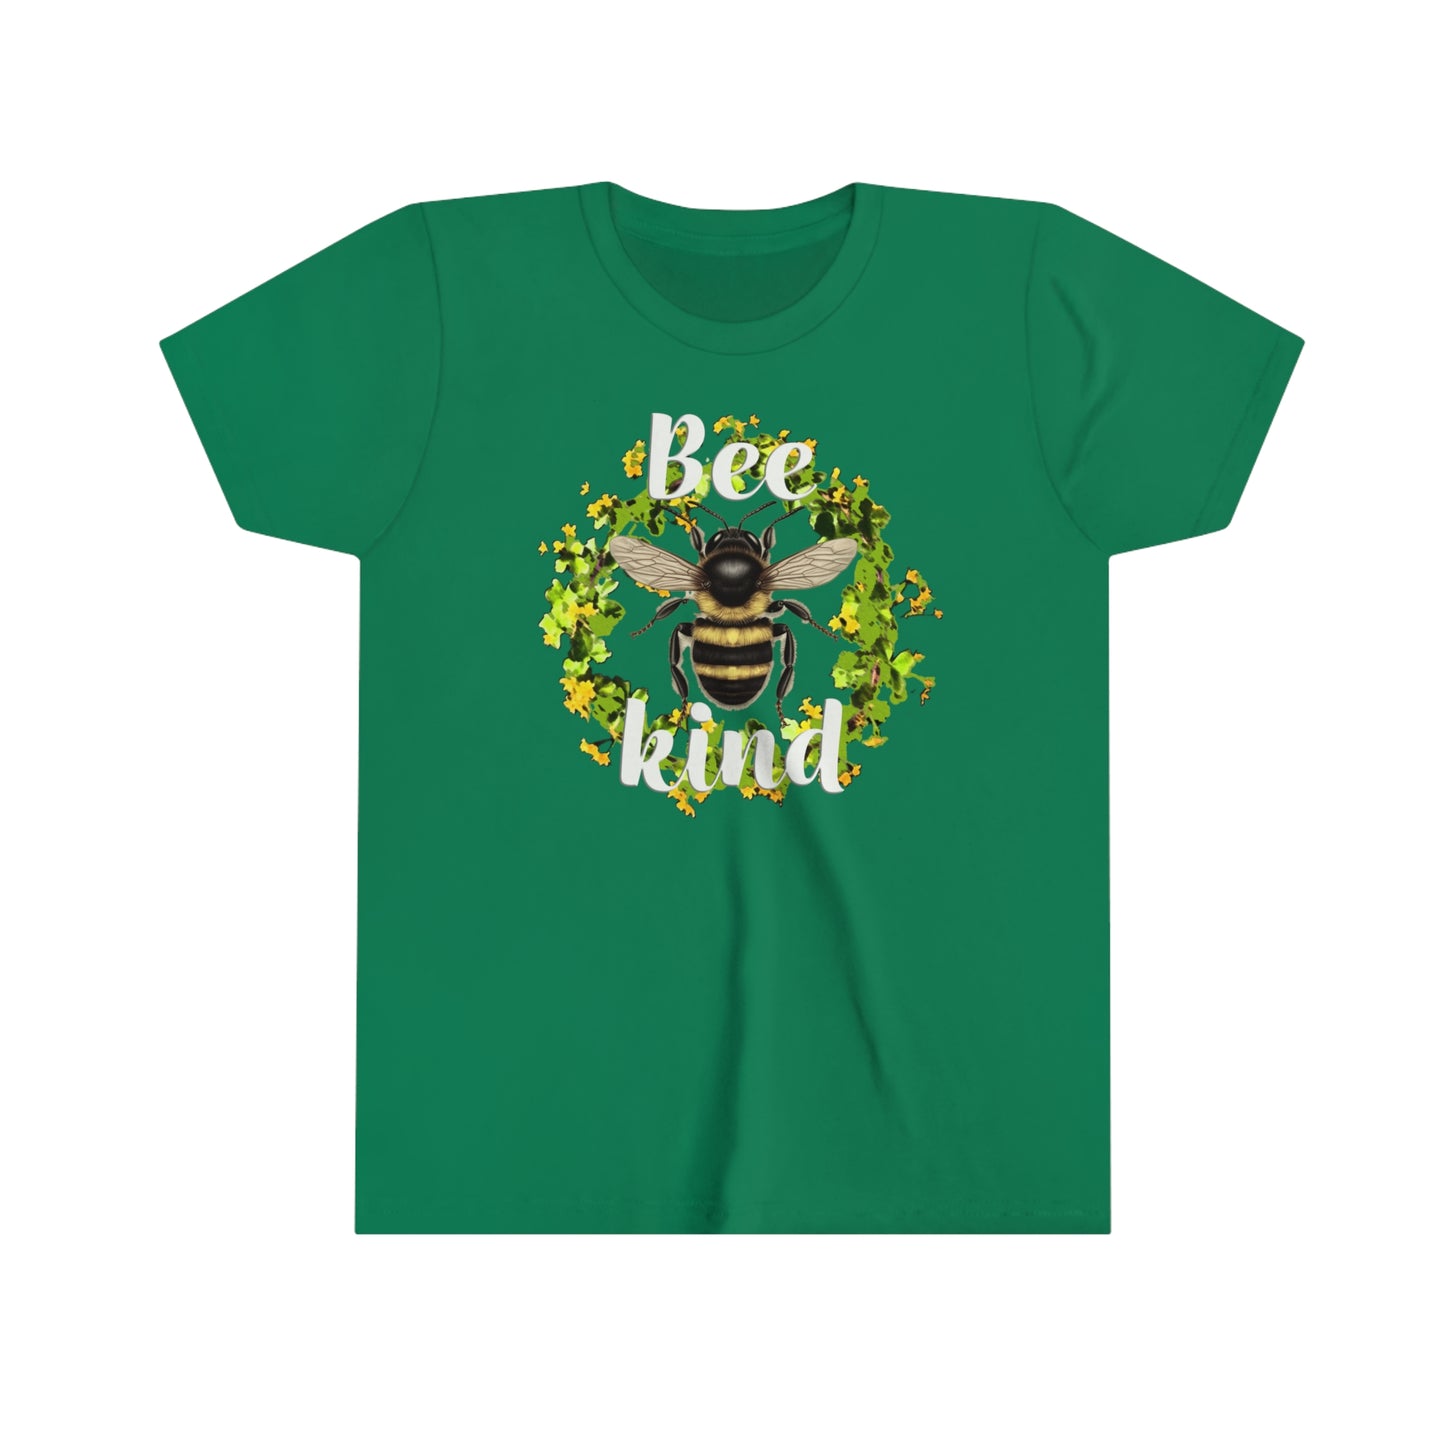 "Bee Kind" Youth Short Sleeve Tee